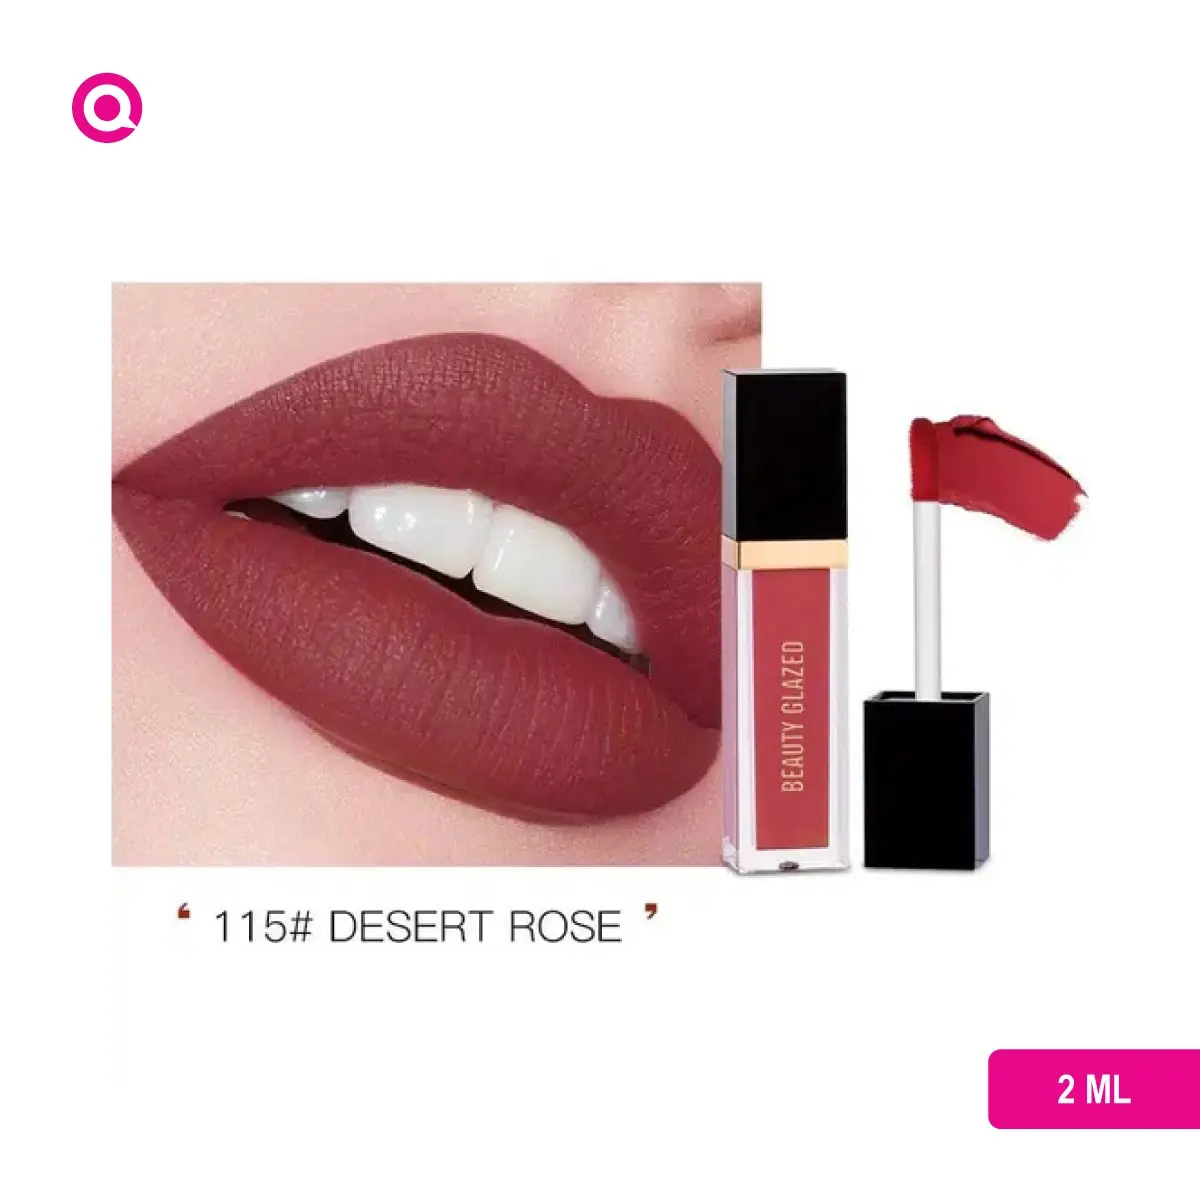 Beauty Glazed Matte Lip Gloss-DESERT ROSE-115